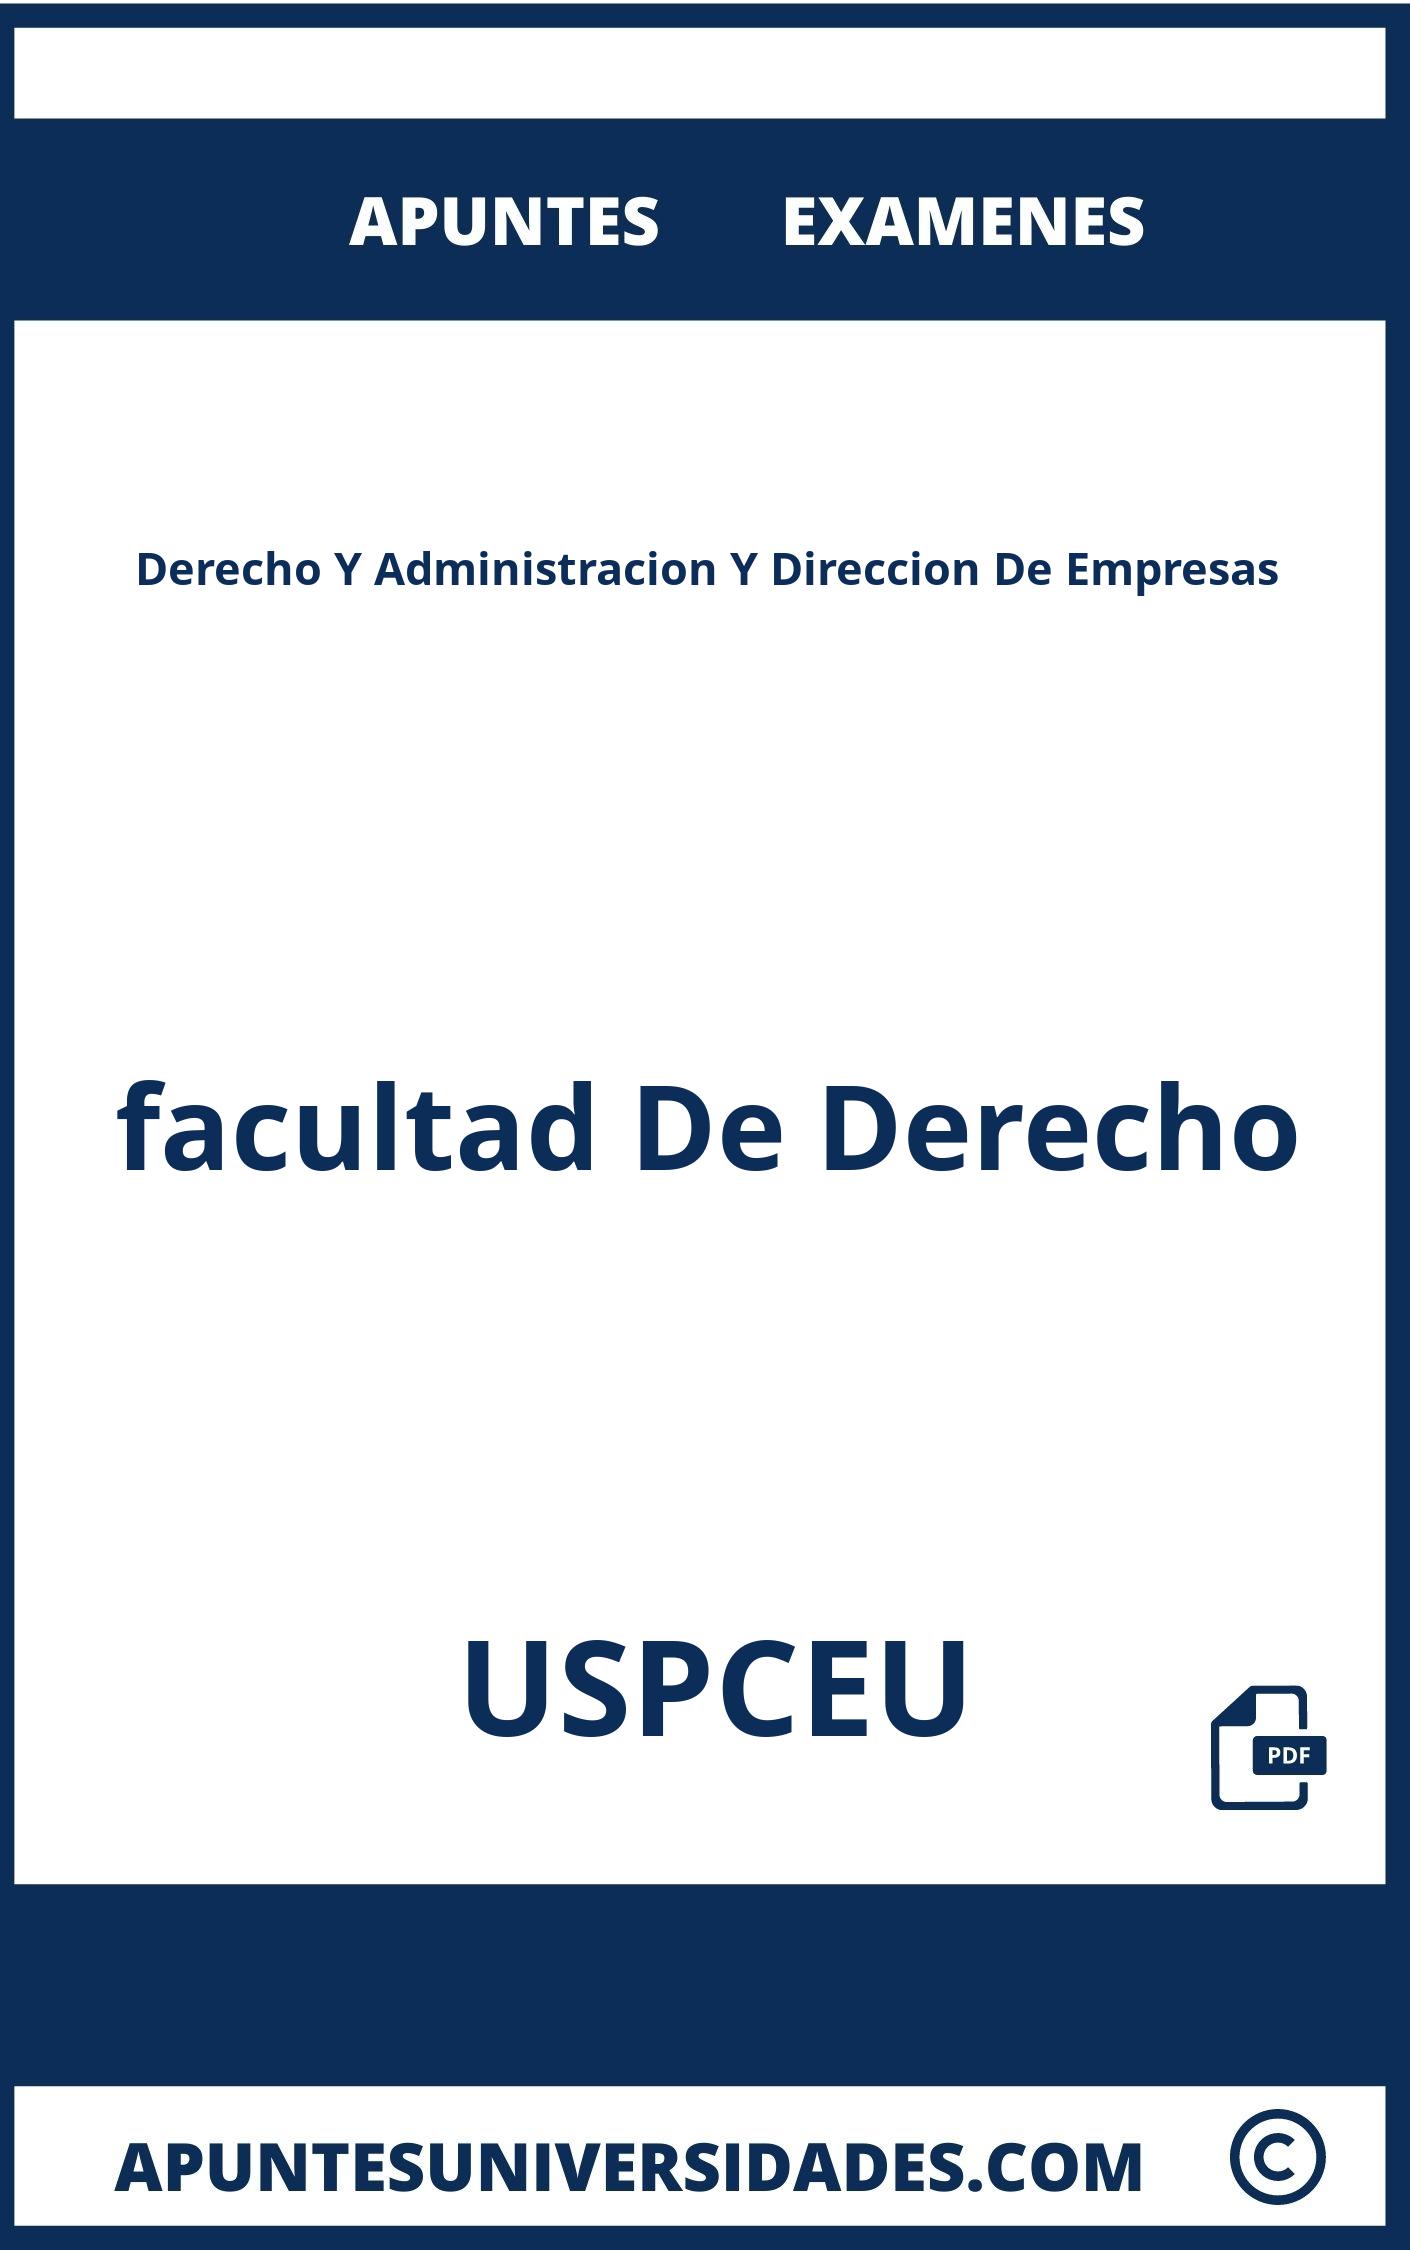 Derecho Y Administracion Y Direccion De Empresas USPCEU Apuntes Examenes